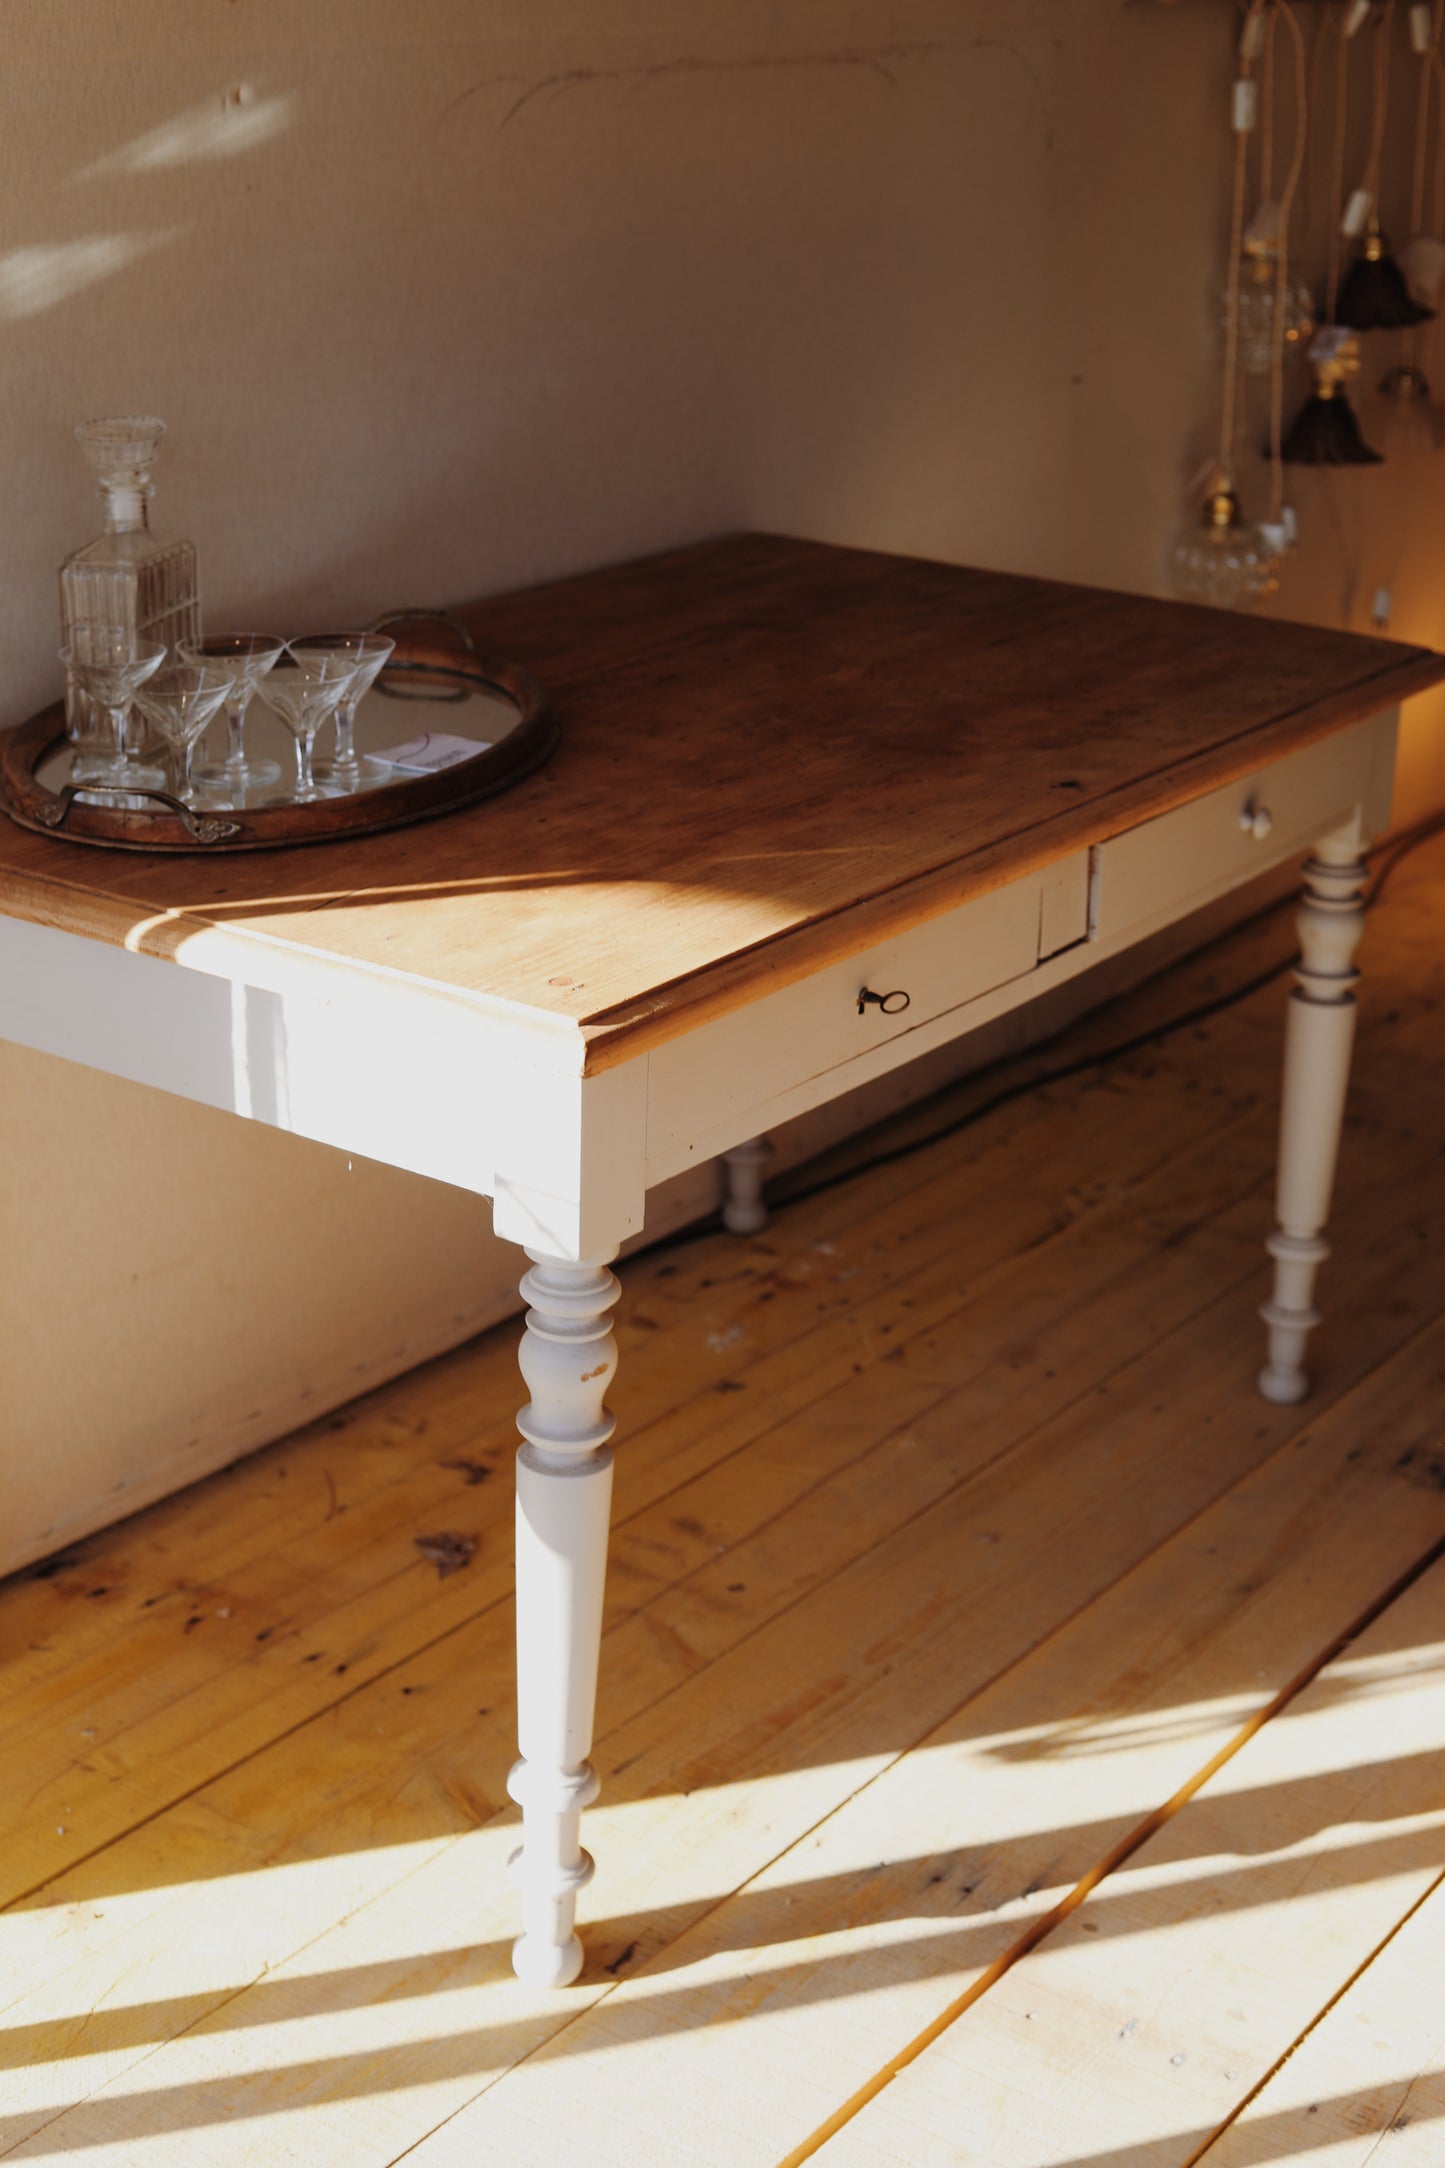 Joli bureau en bois avec un plateau en pin brut et deux tiroirs, le piétement est peint en beige, la serrure ne fonctionne pas. La peinture est abimée à certains endroits.